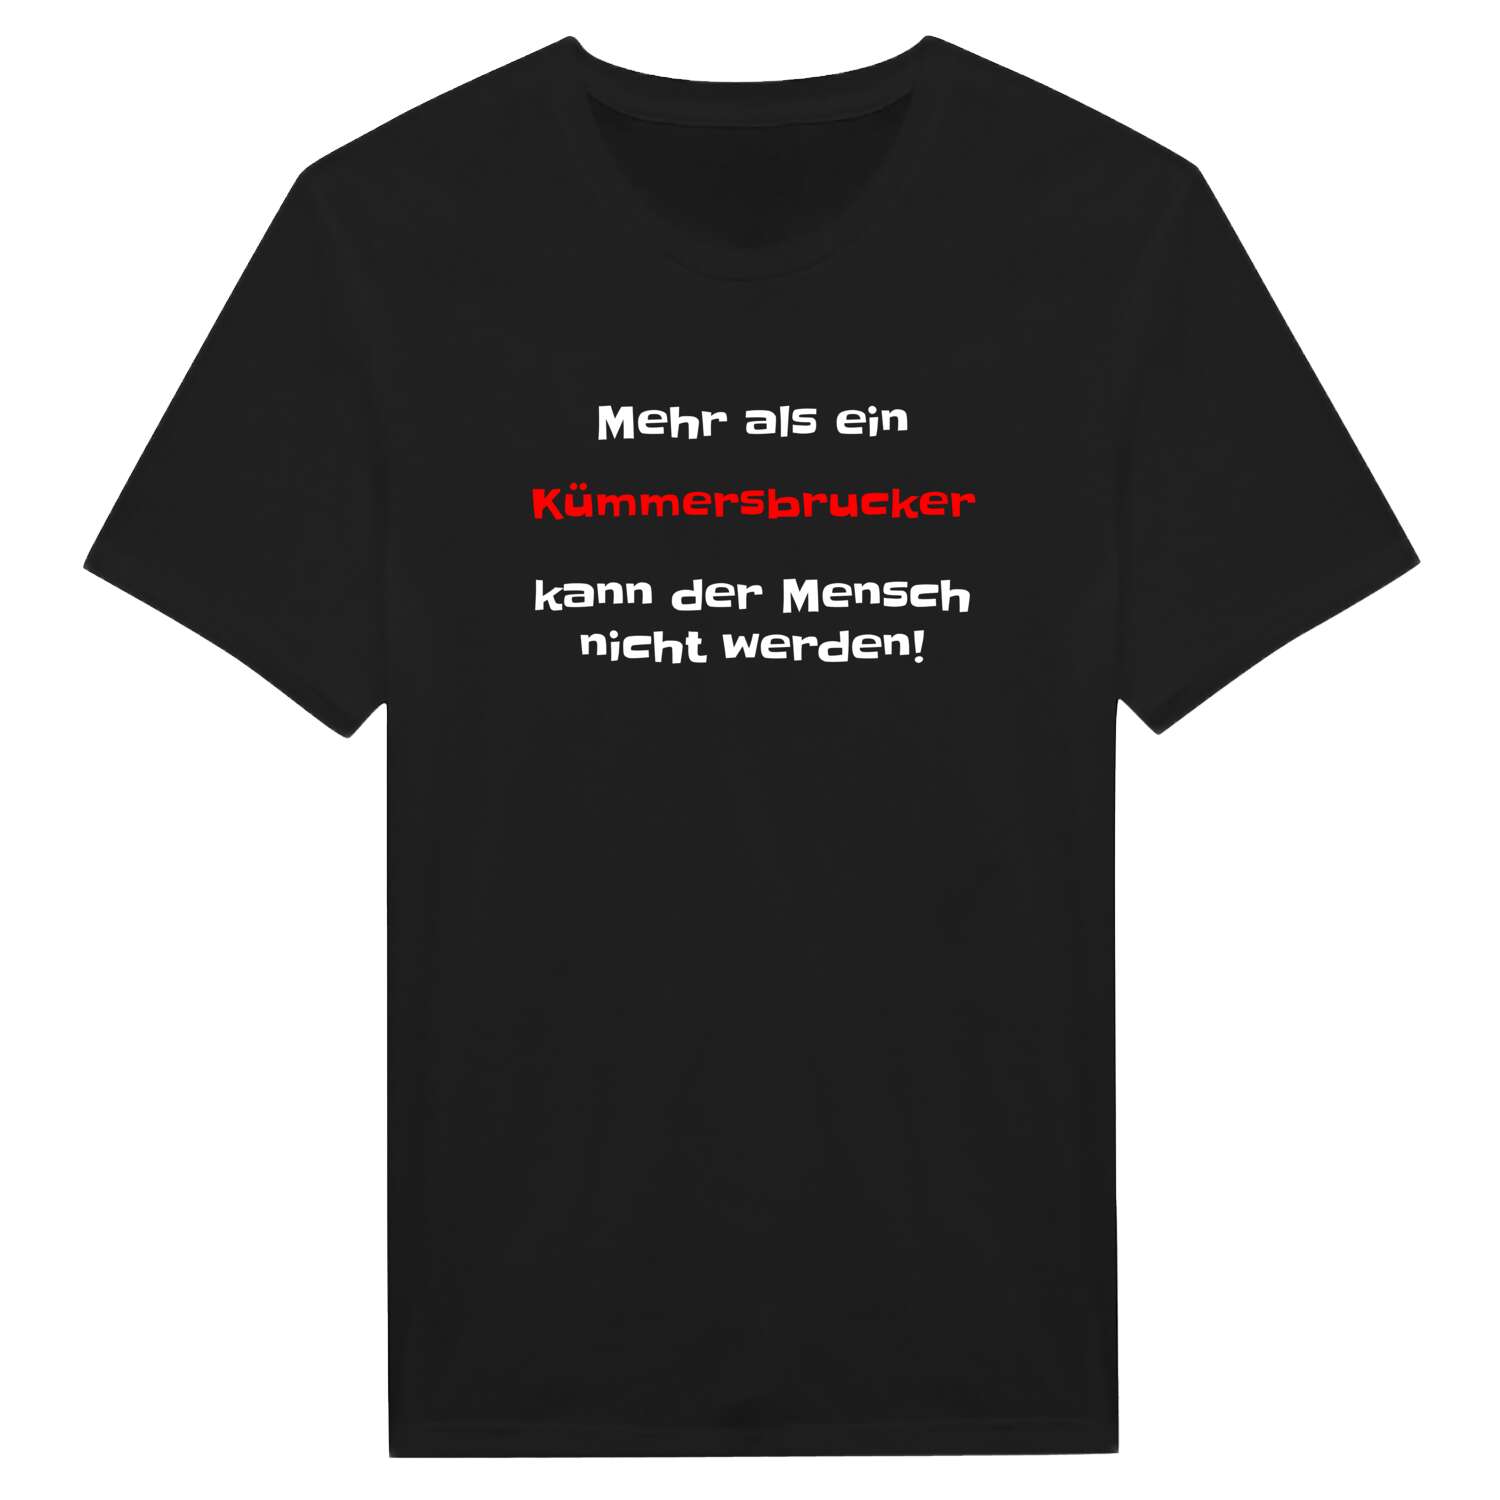 Kümmersbruck T-Shirt »Mehr als ein«